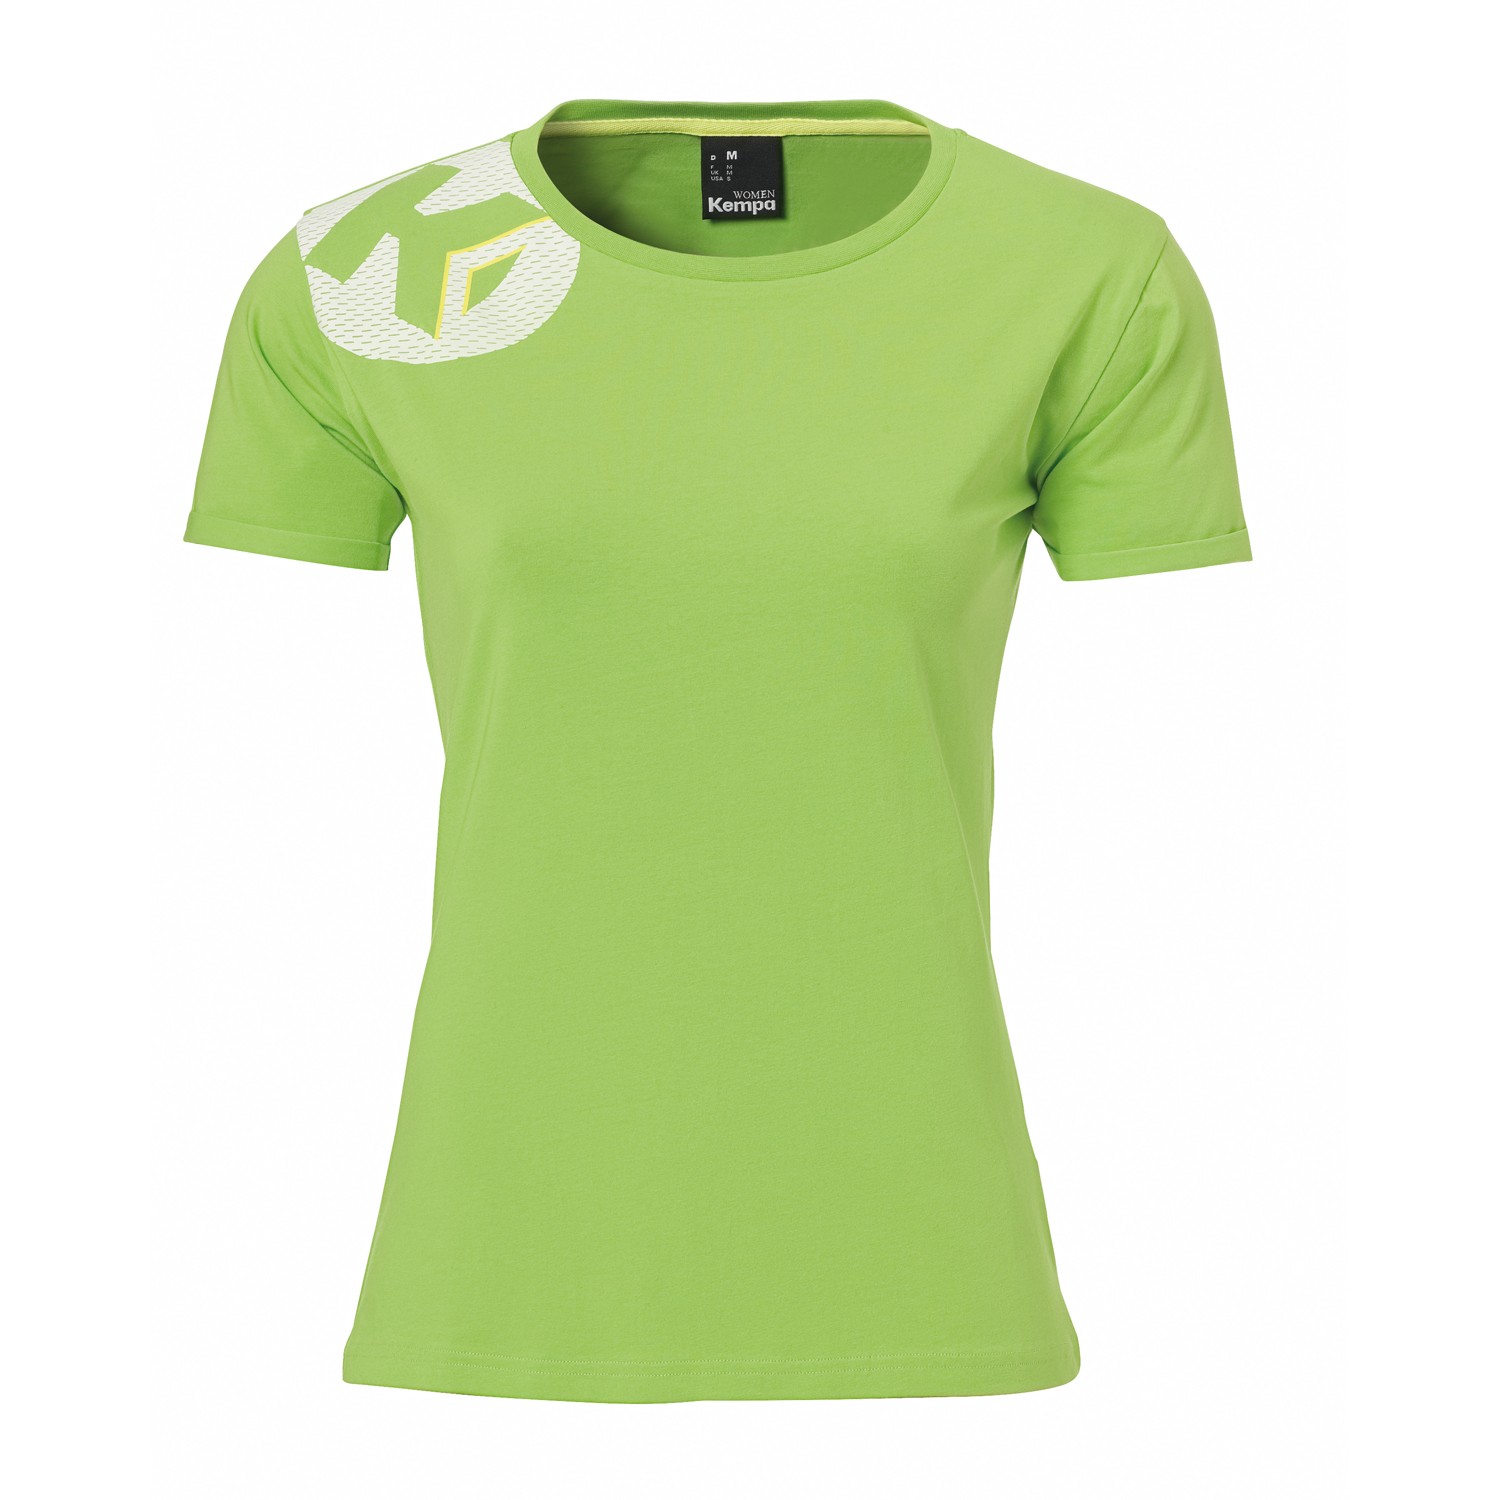 Kempa Core 2.0 T-Shirt Damen hellgrün